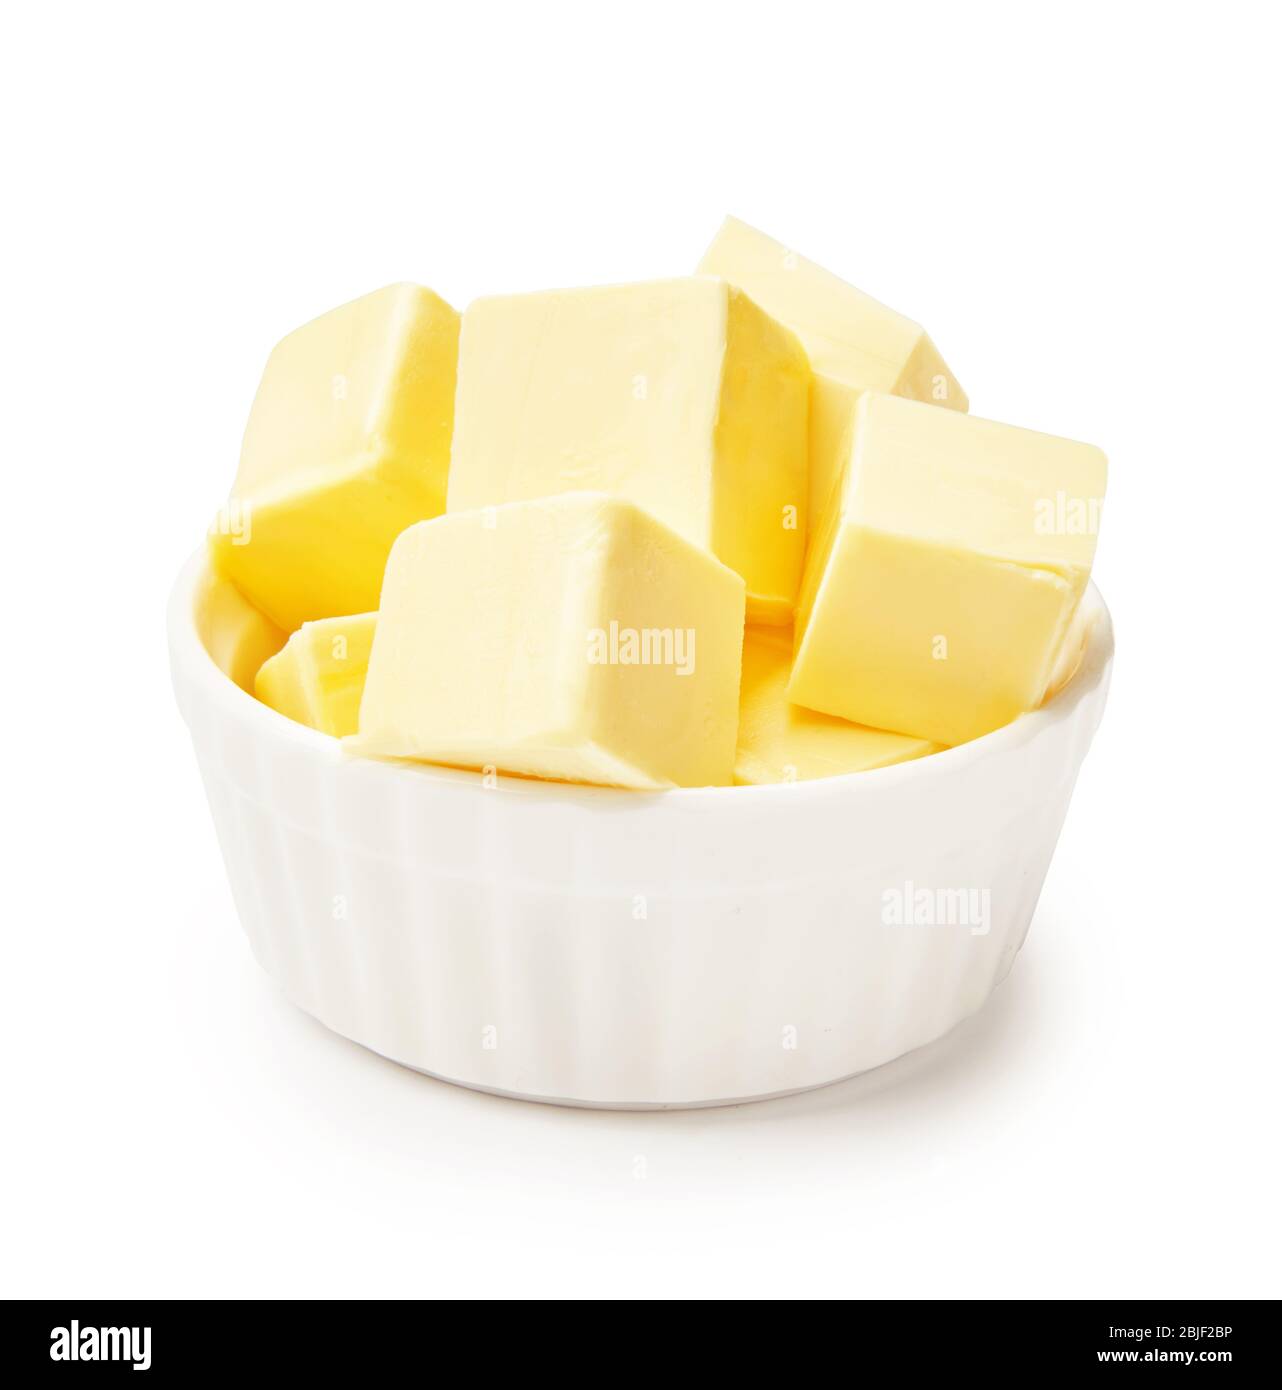 Morceaux de beurre dans un bol blanc isolés sur fond blanc. Cubes de beurre. Banque D'Images